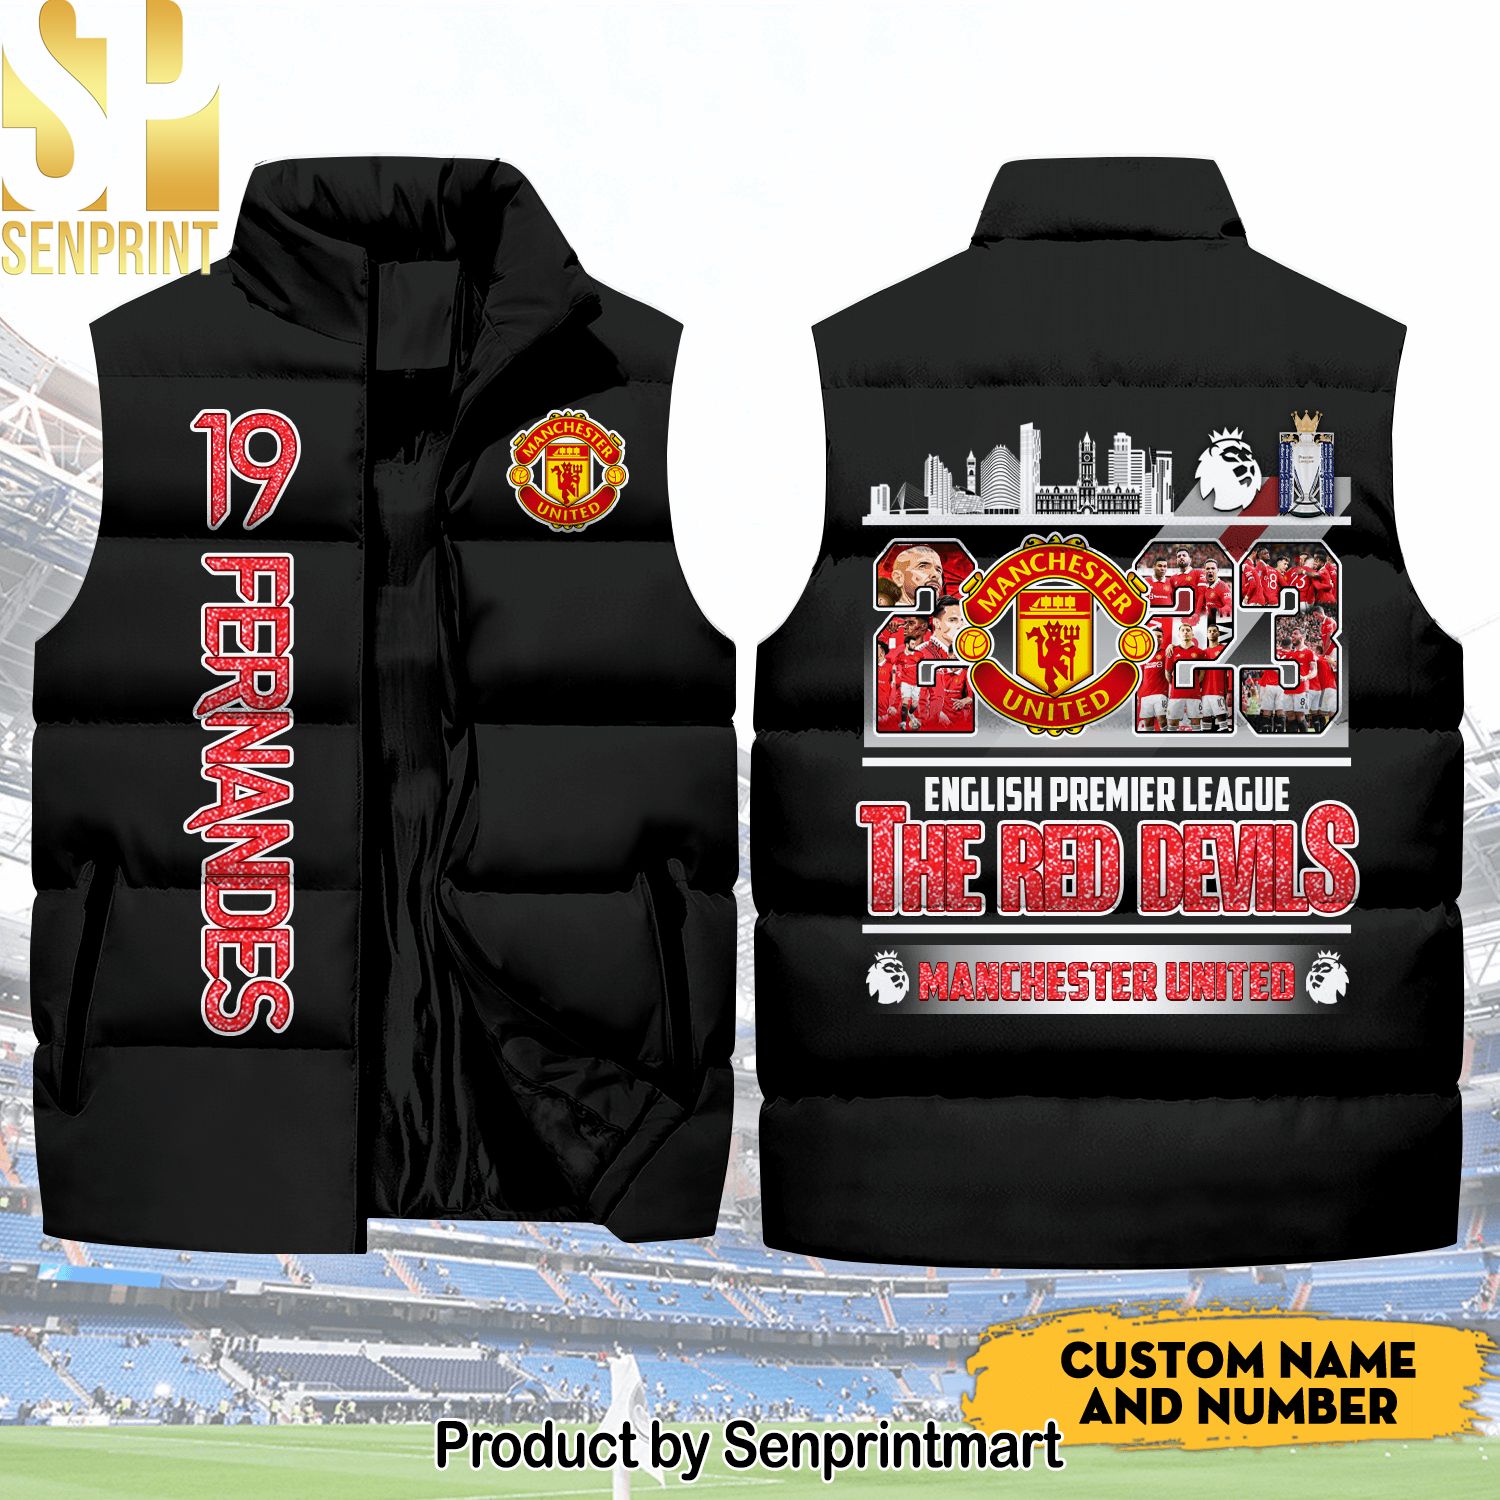 English Premier League Manchester United Number Hypebeast Fashion Sleeveless Jacket